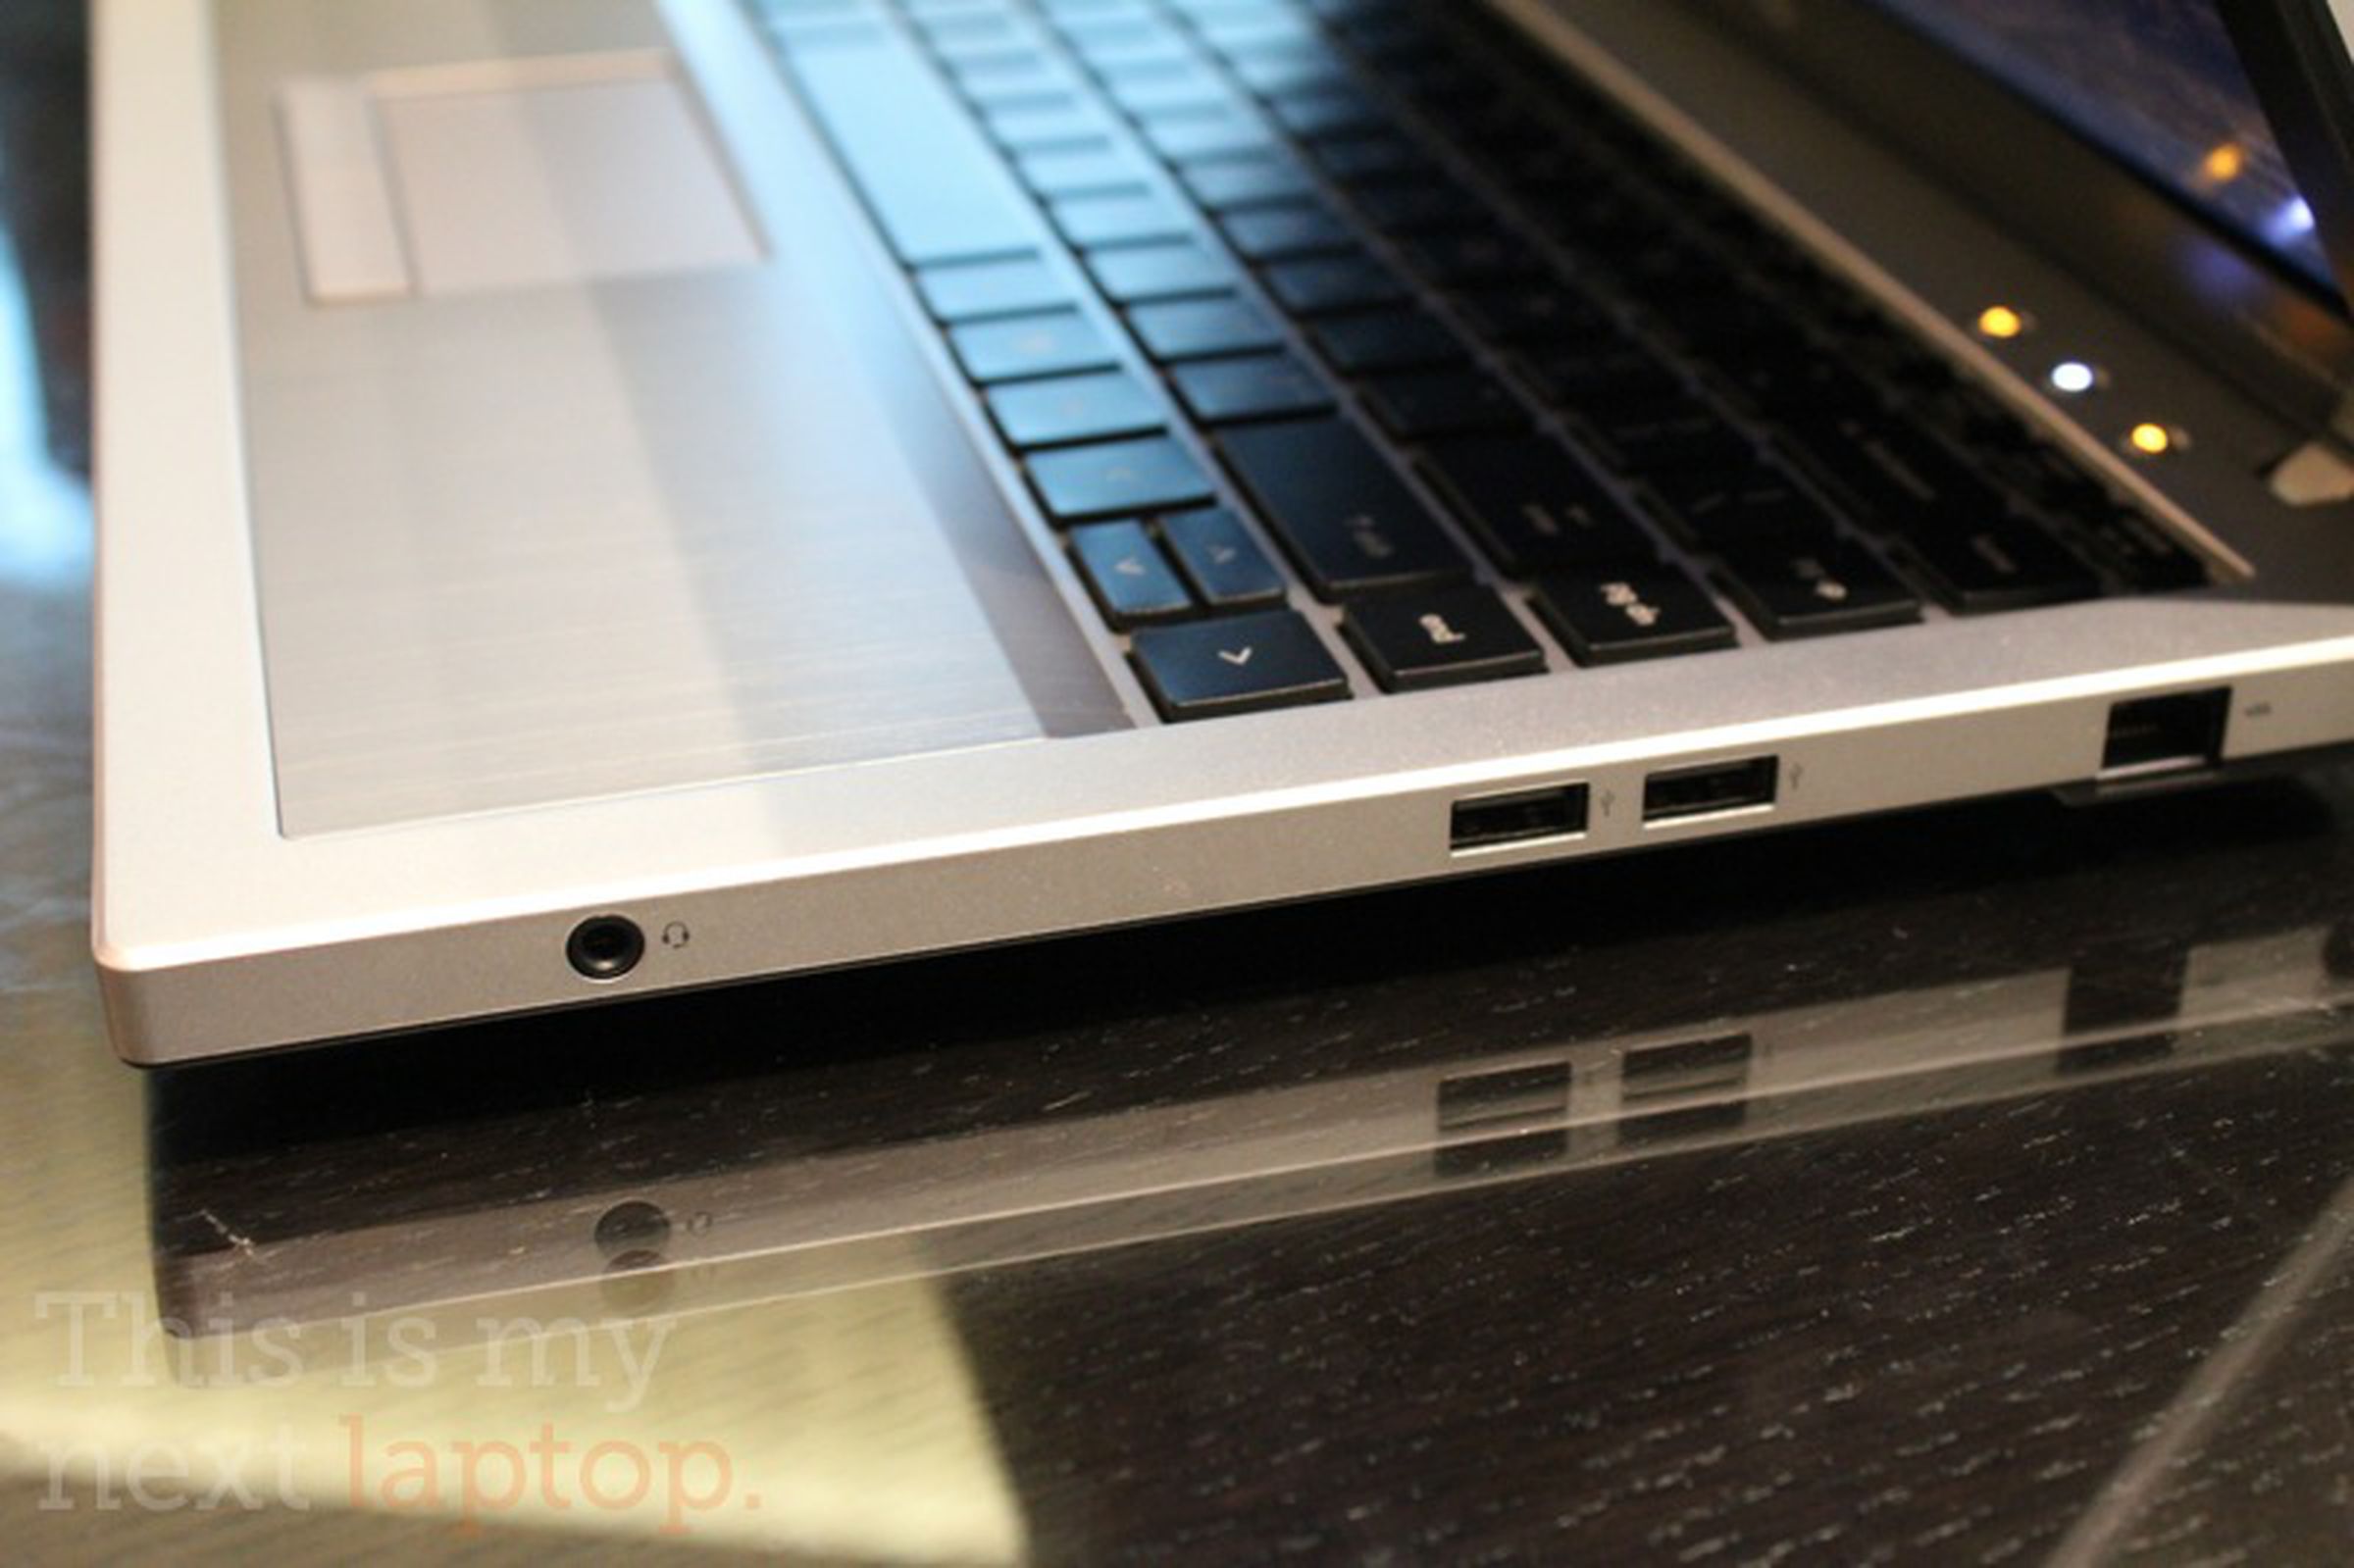 HP ProBook 5330m hands-on pictures